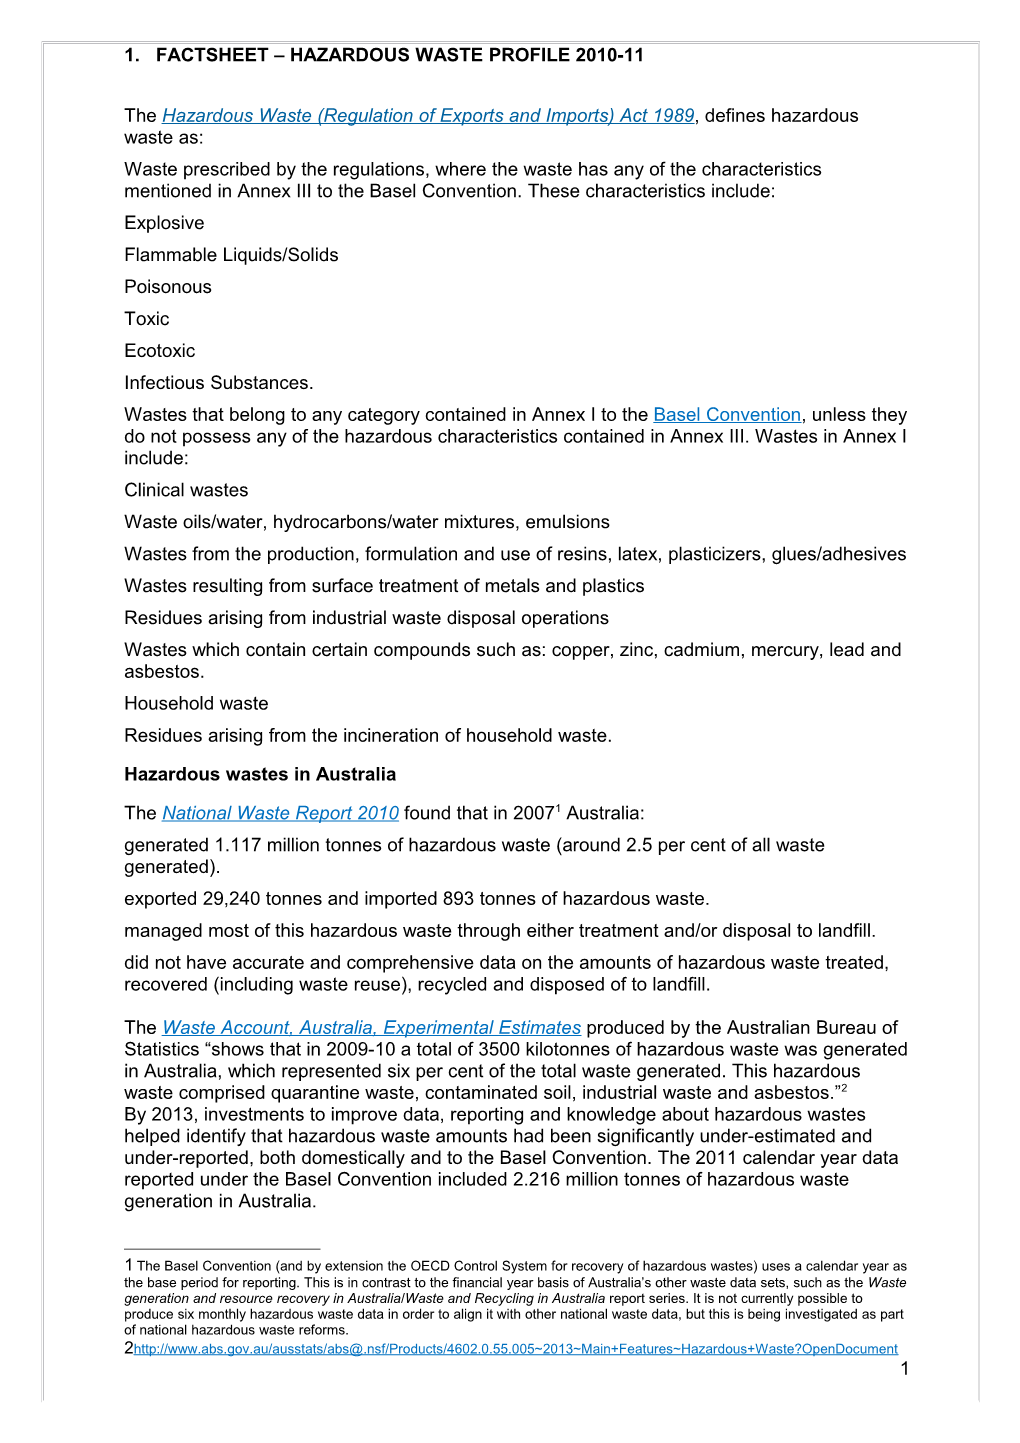 Fact Sheet - Hazardous Waste Profile 2010-11